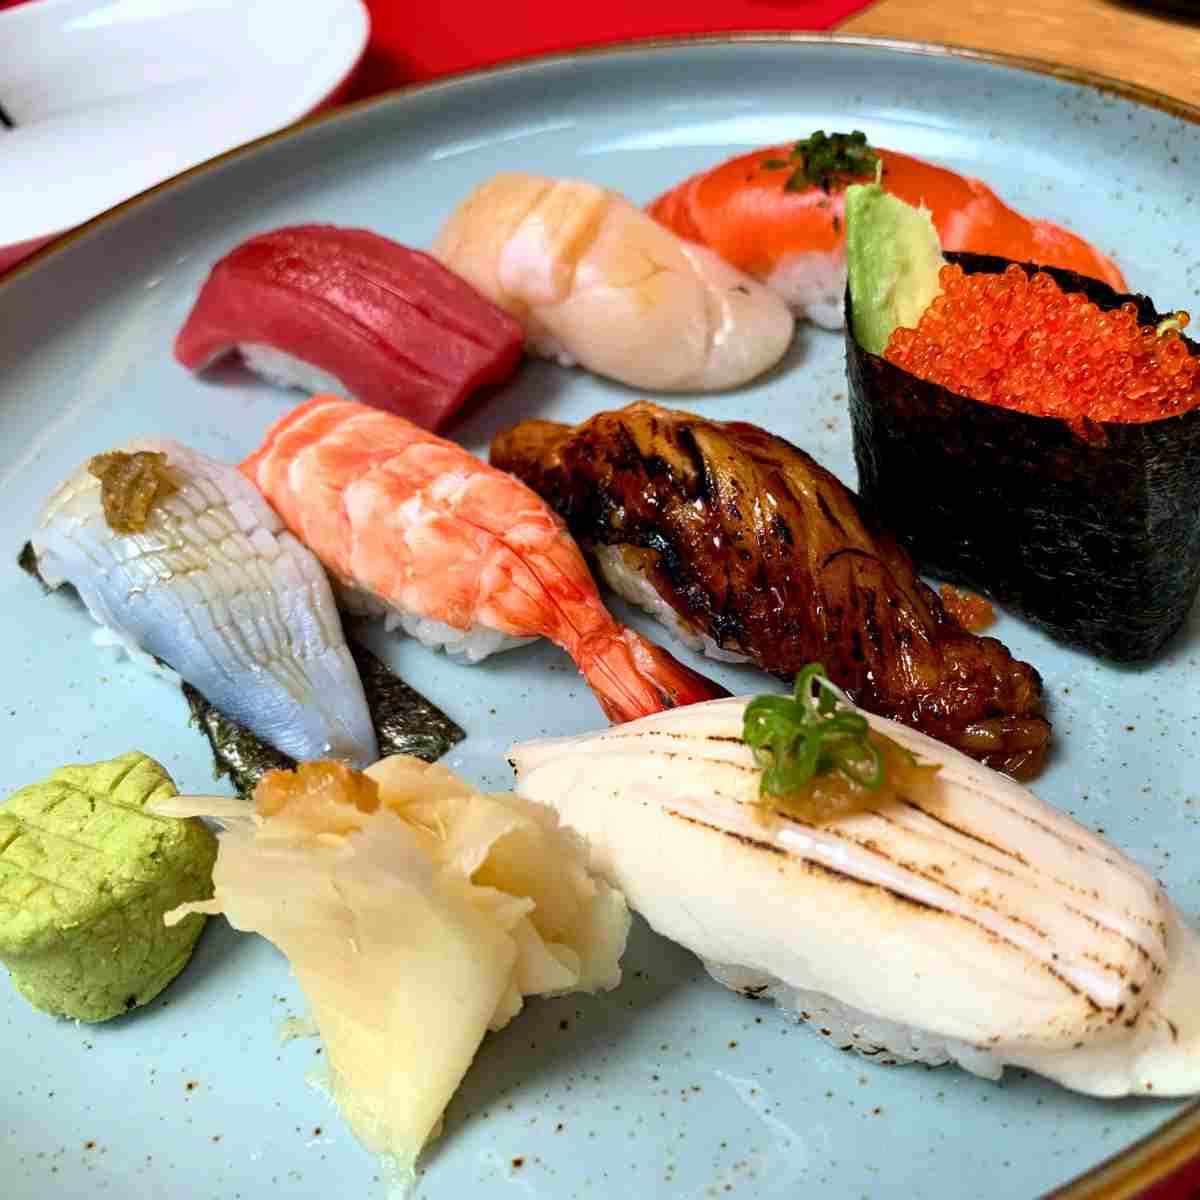 Sushi platter from Japanese sushiya